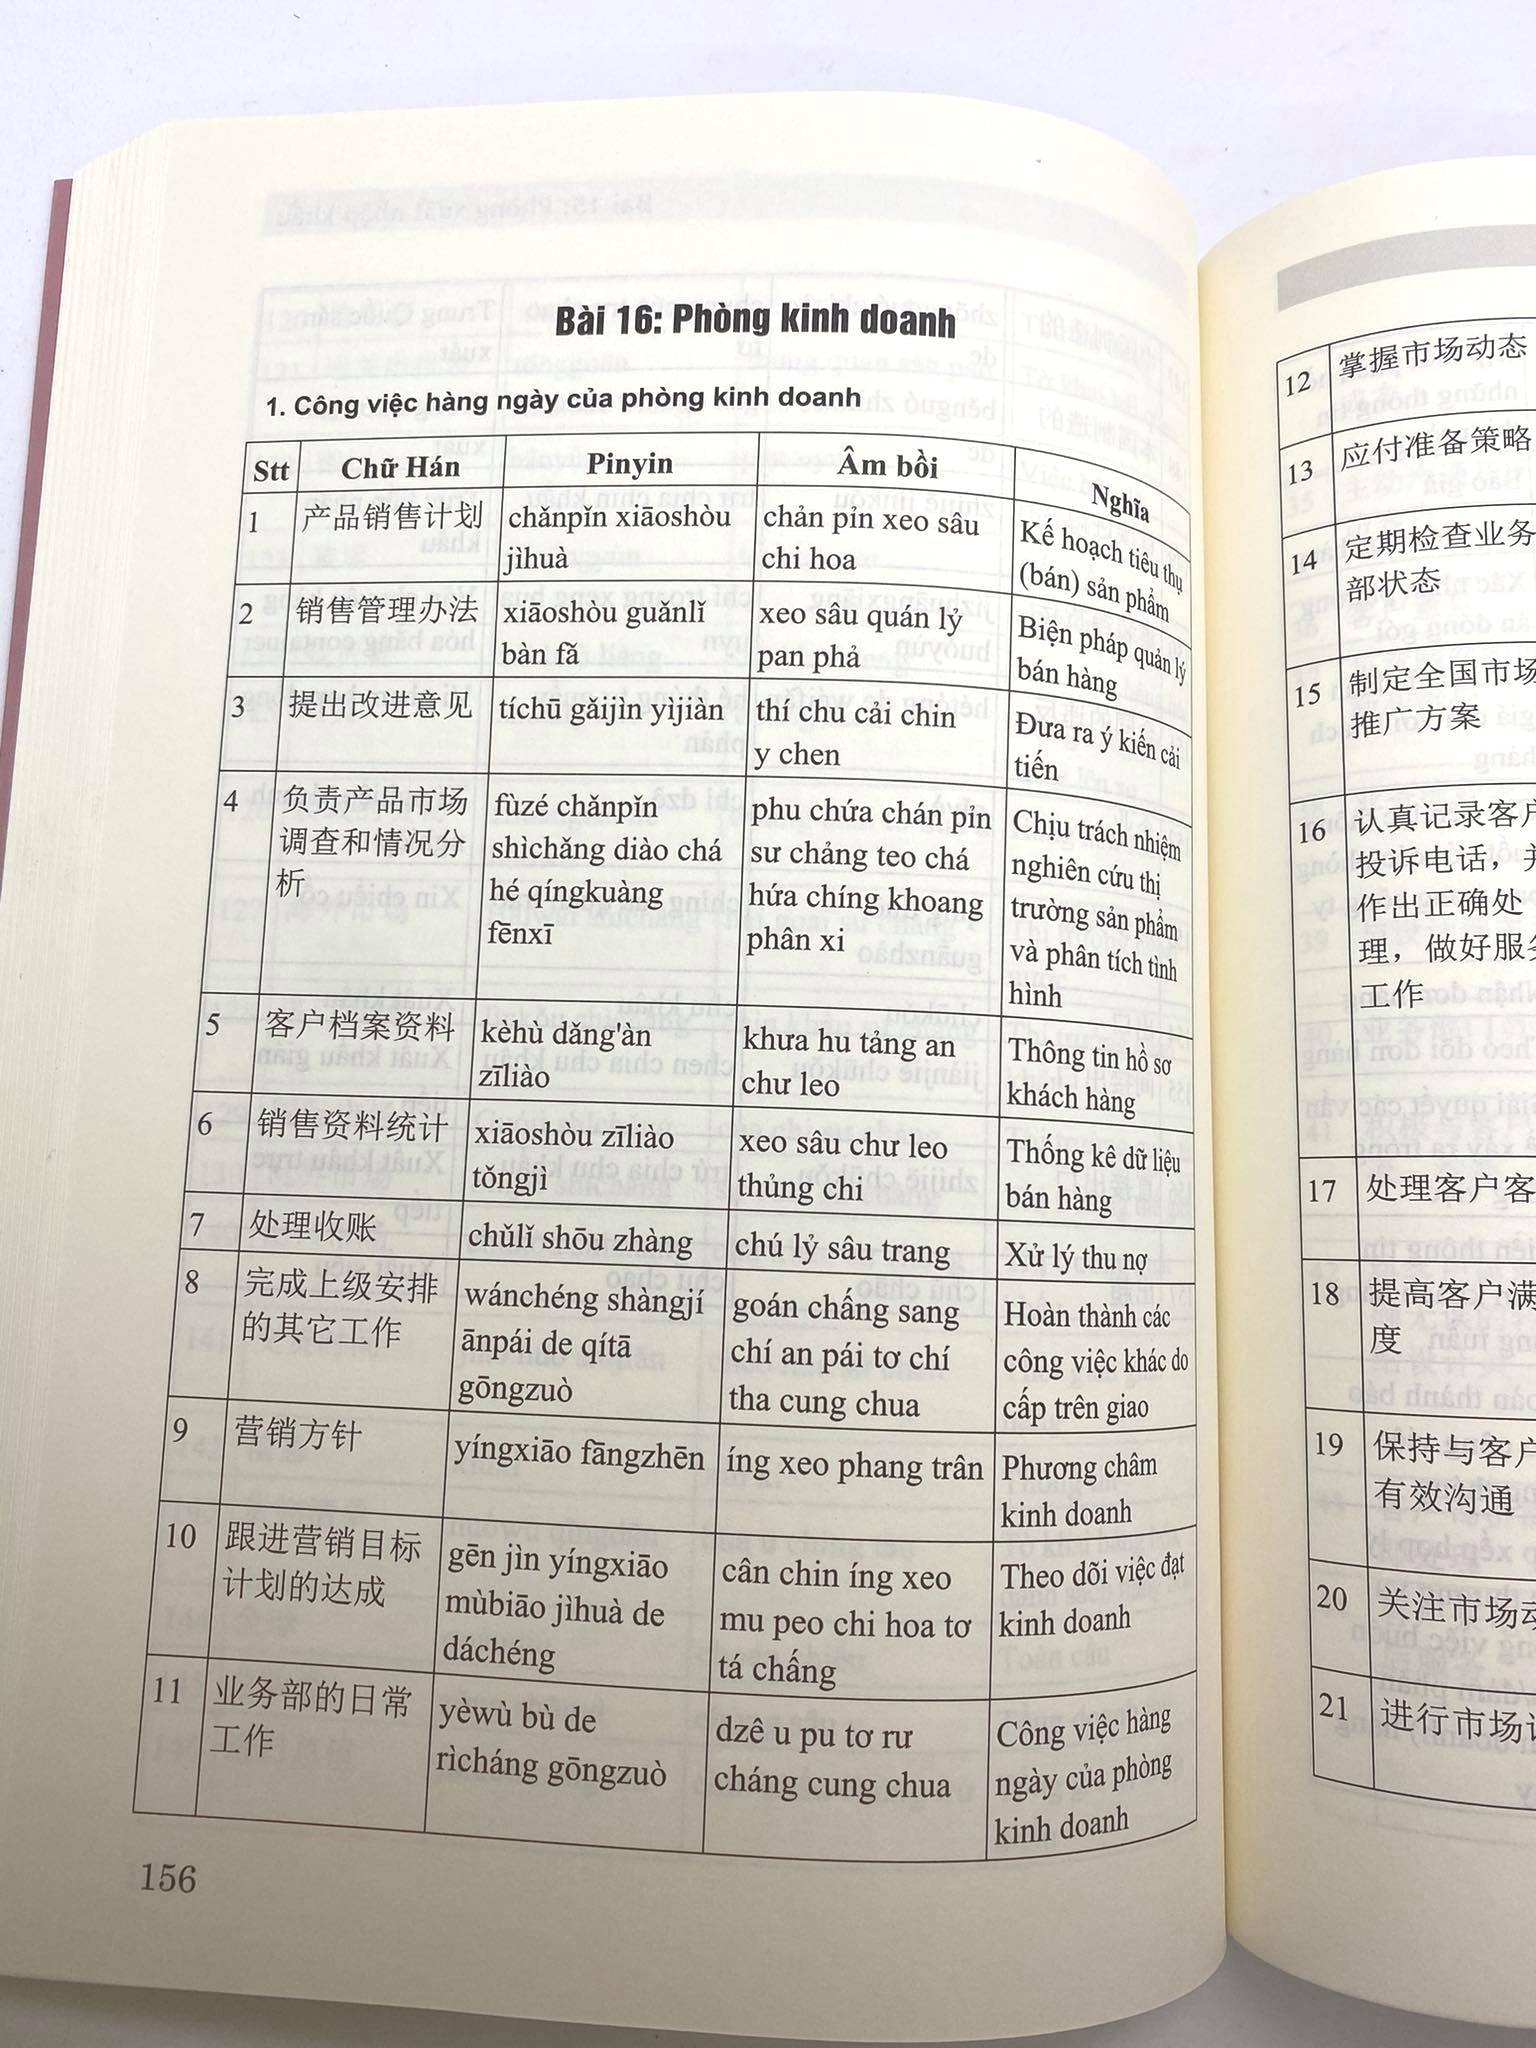 Sách- Combo 2 sách tự học tiếng trung giao tiếp từ con số 0 tập 2 và Tự học tiếng Trung văn phòng công xưởng ngành may mặc, giày da, gổ, kế toán, xuất nhập khẩu, điện tử,... có pinyin,âm bồi, mp3 nghe+DVD tài liệu